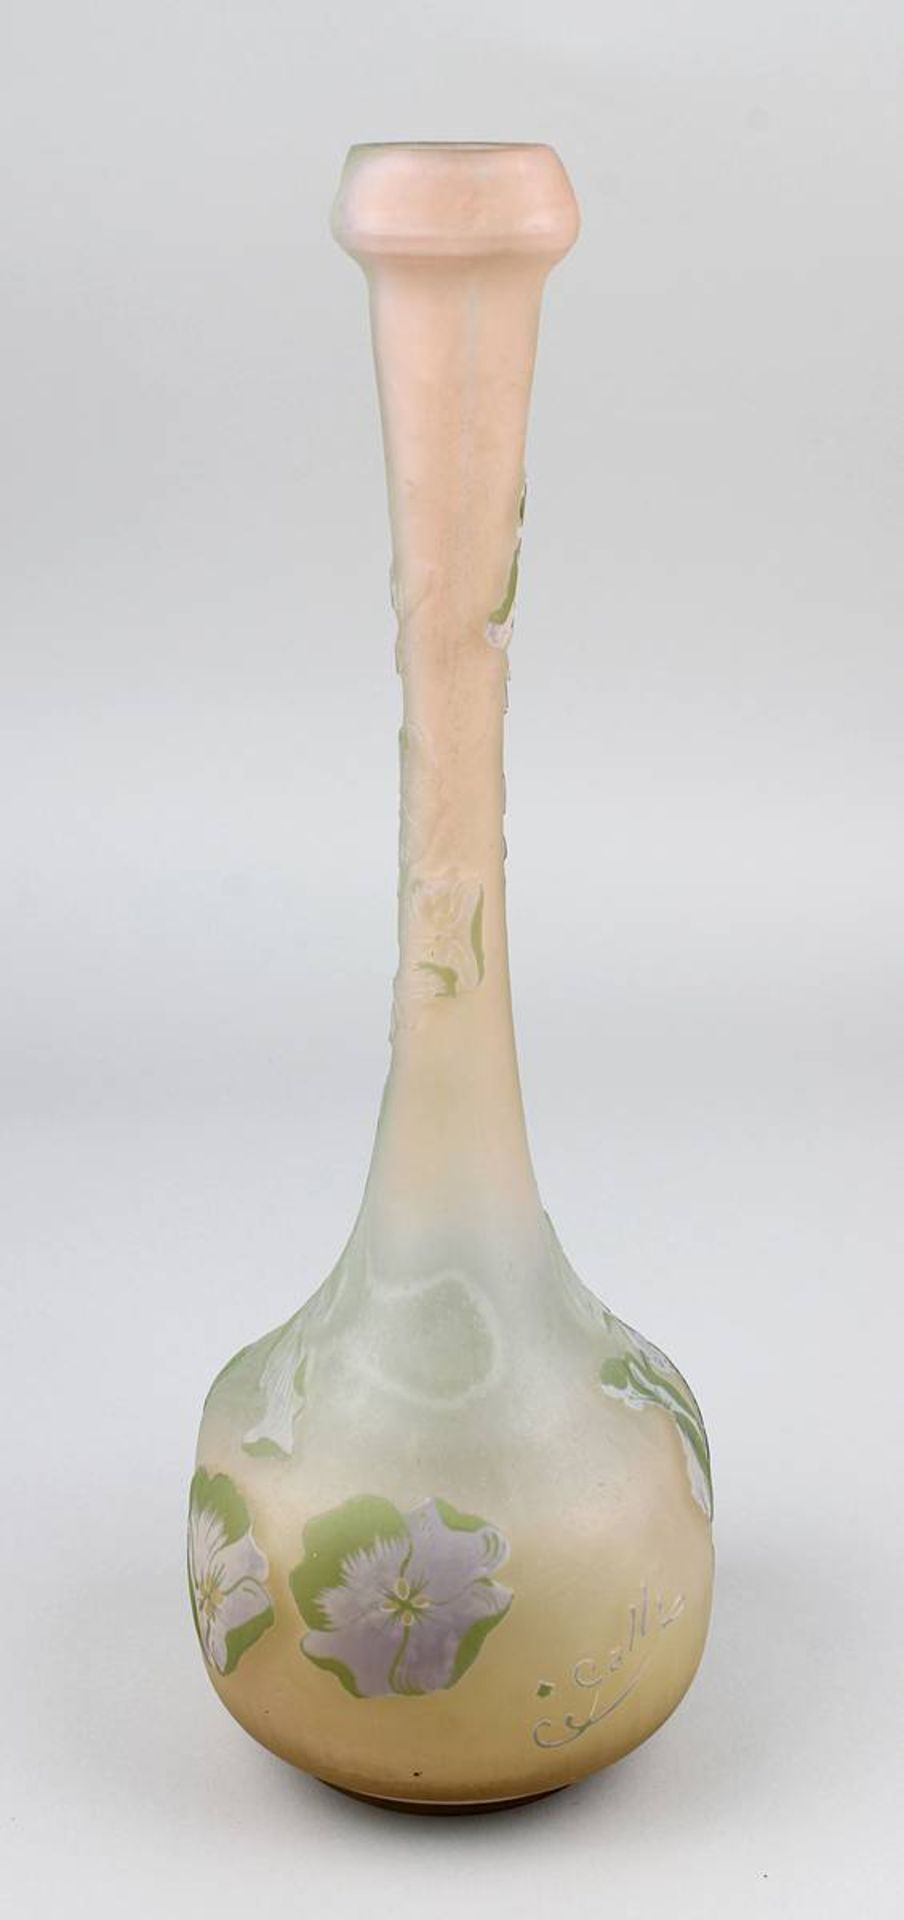 Gallé Jugendstil-Vase mit Hortensiendekor, Nancy 1904-06, vierpassiger Vasenbau mit langgezogenem - Image 4 of 5